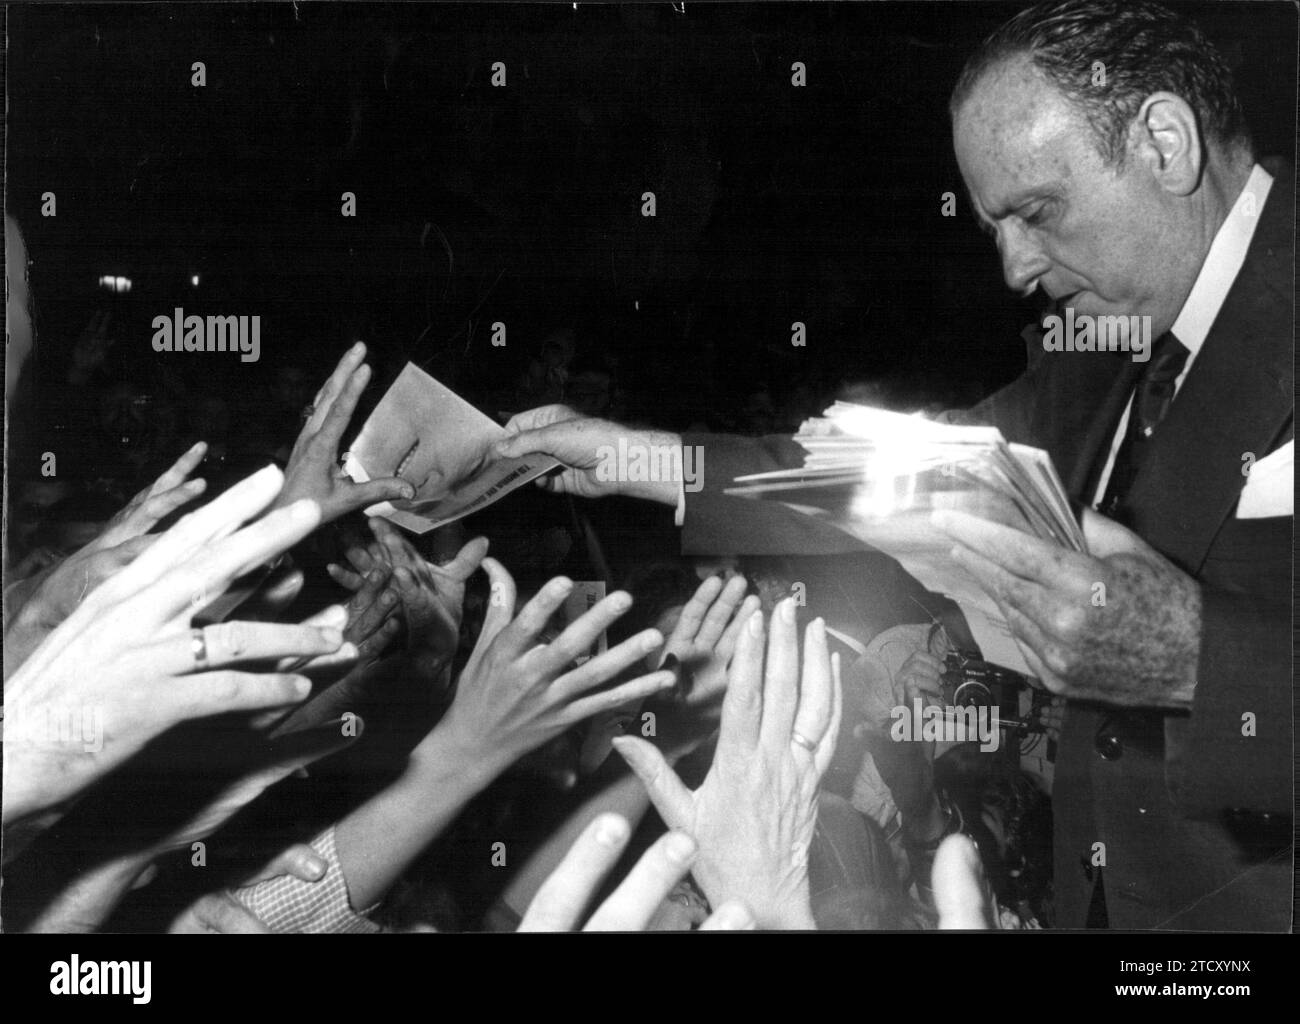 09/30/1982. L'alleanza popolare raduna in uno dei quartieri alla periferia di Madrid durante la campagna elettorale per le elezioni generali che si terranno il 28 di questo mese. Crediti: Album / Archivo ABC Foto Stock